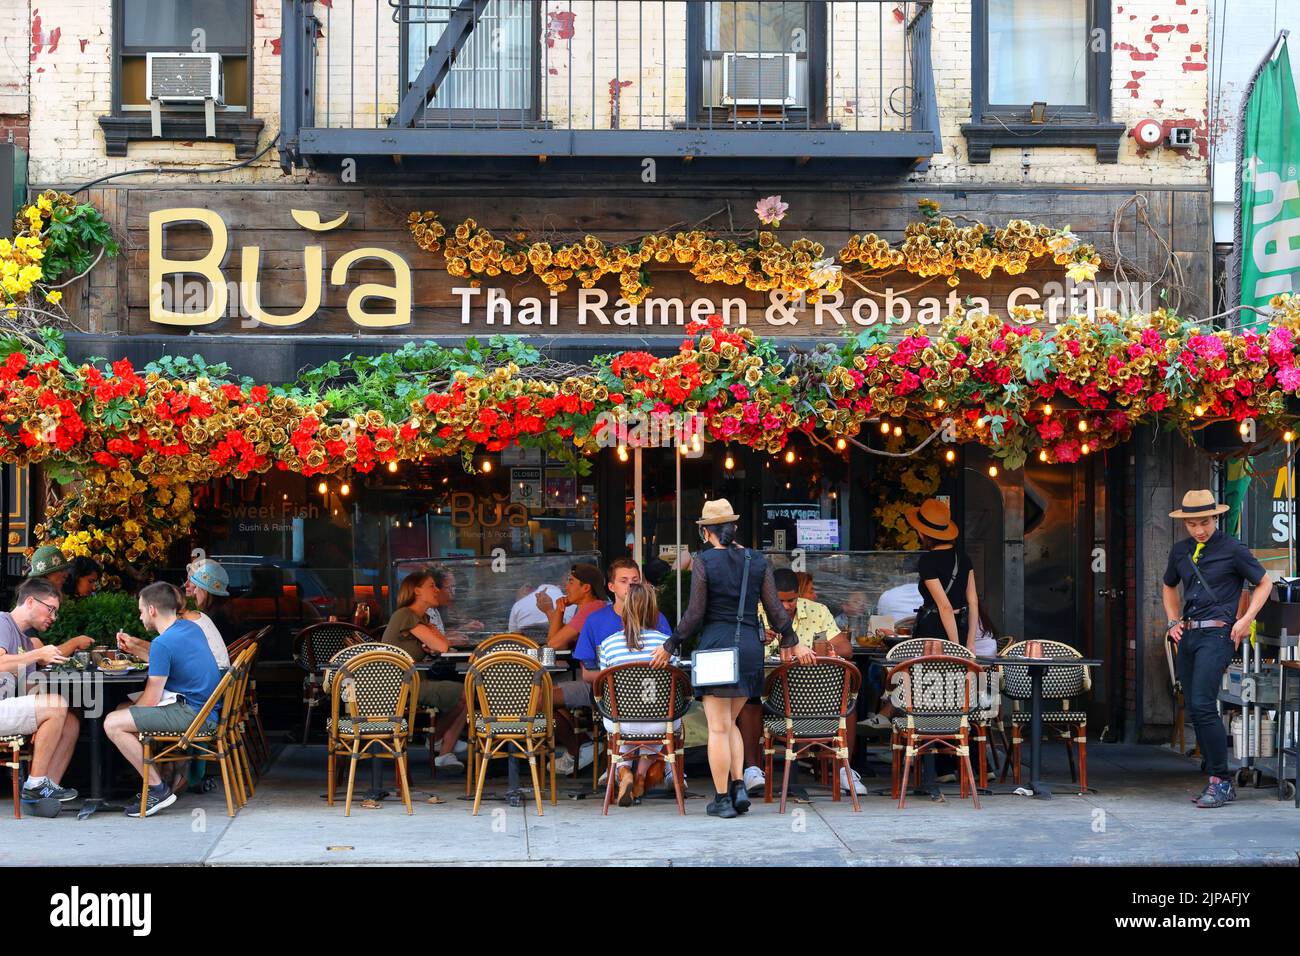 BUA Thai Ramen & Robata Grill, 1611 2nd Ave, New York, foto di un ristorante tailandese e giapponese nell'Upper East Side di Manhattan Foto Stock